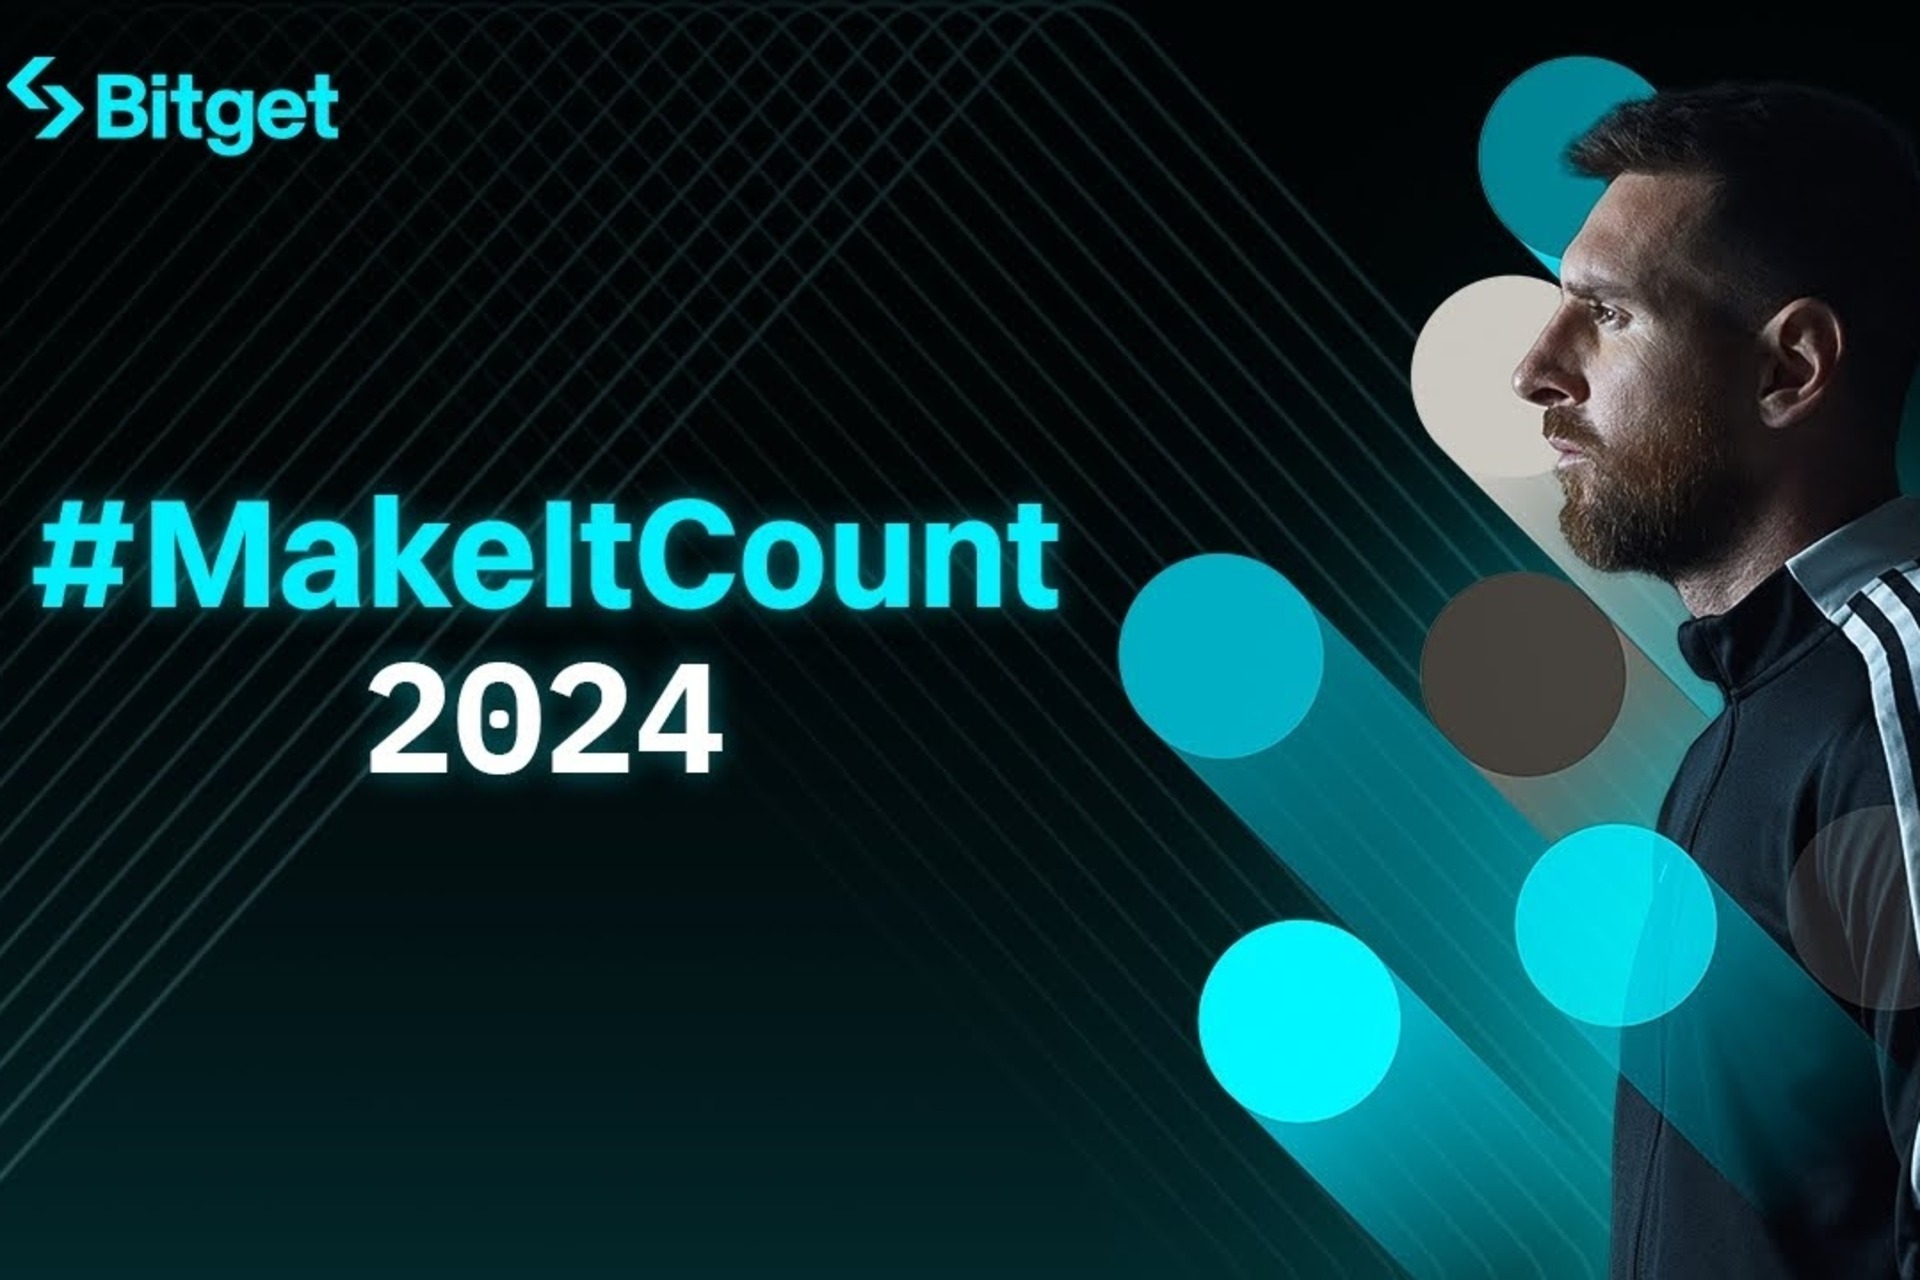 Lionel Messi: il film #MakeItCount 2024 simboleggia i valori fondamentali condivisi dall’exchange crypto Bitget e dal calciatore argentino